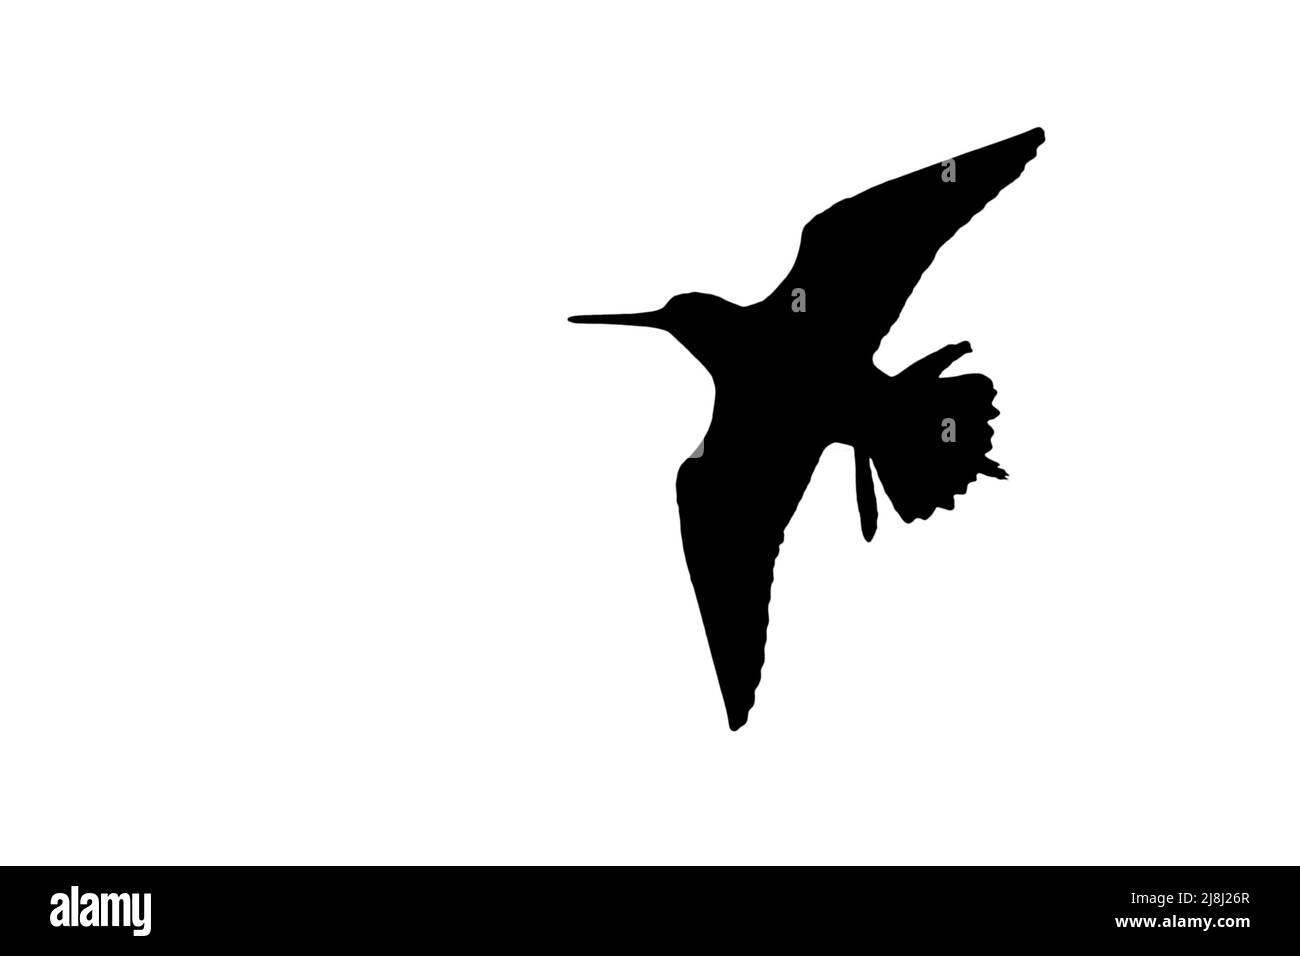 Silhouette di cecchino comune (Gallinago gallinago) in volo delineata su sfondo bianco per mostrare le ali, la testa e le forme della coda Foto Stock